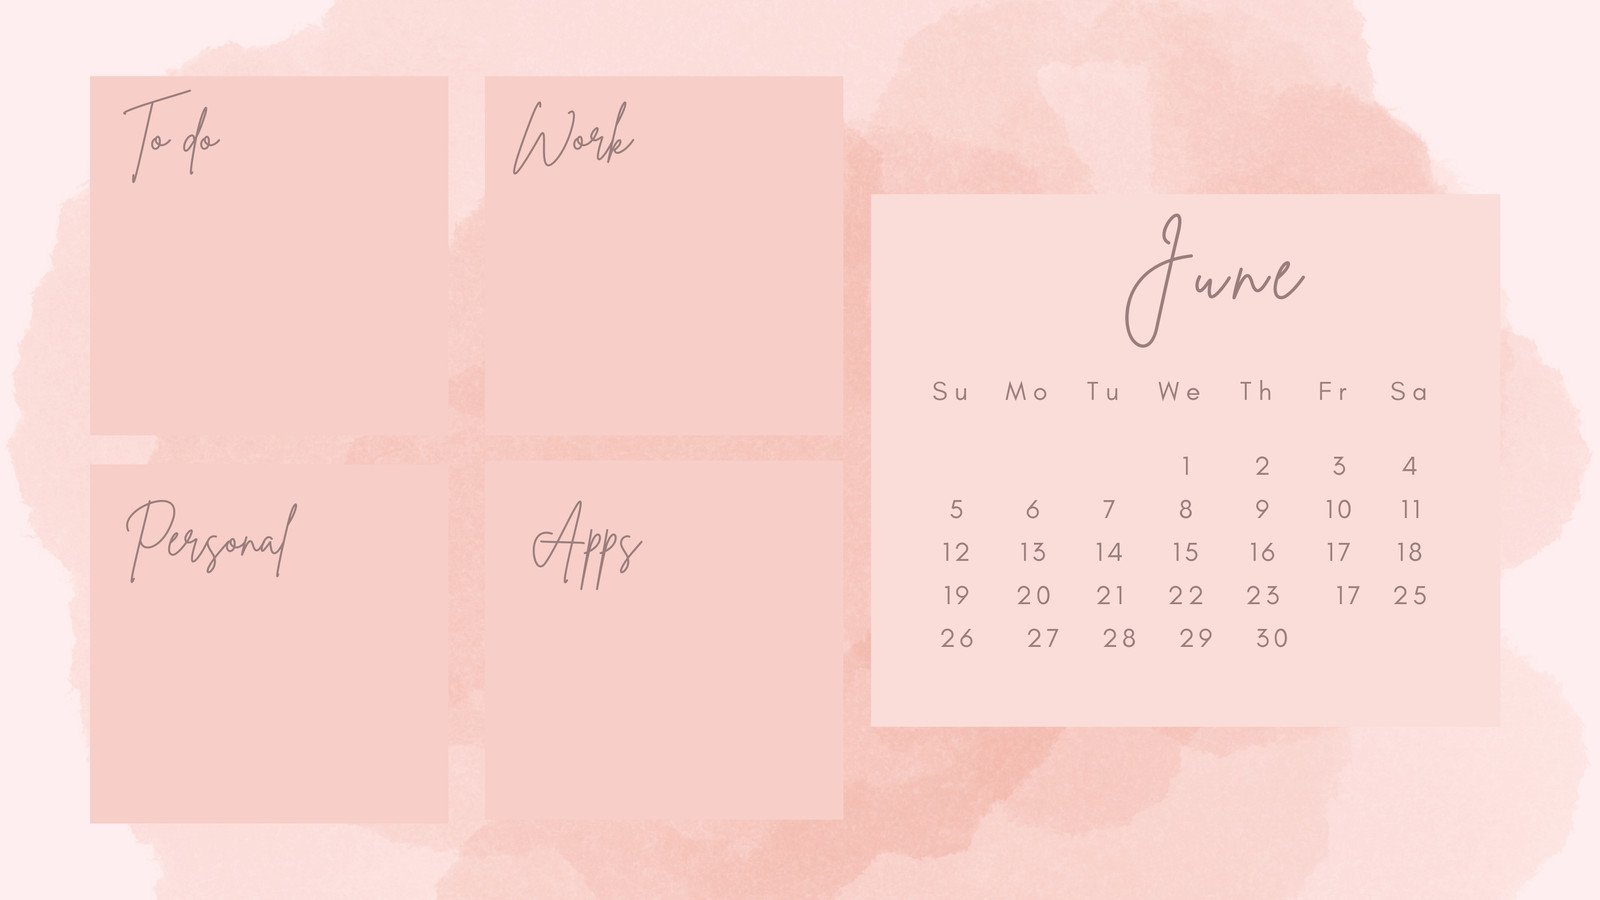 June 2022 Calendar Wallpapers  Top Free June 2022 Calendar Backgrounds   WallpaperAccess